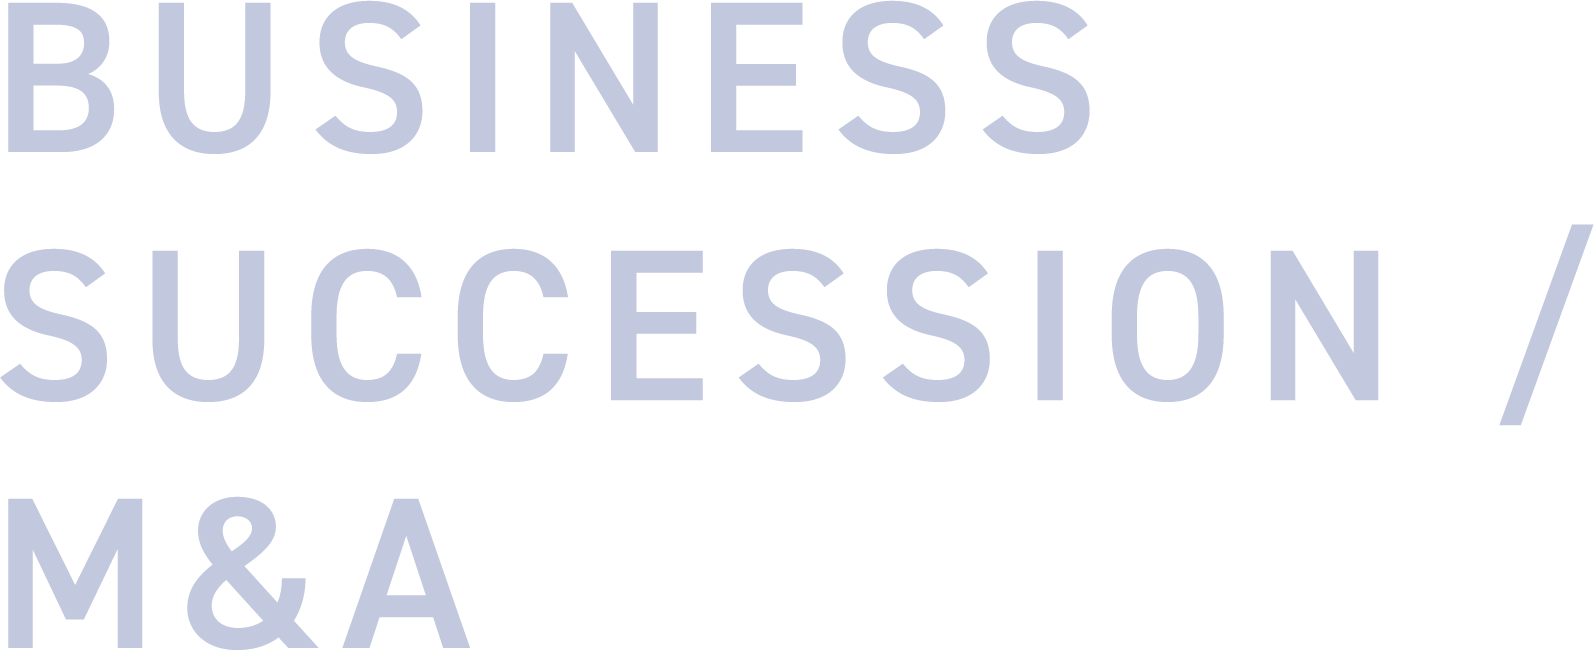 BUSINESS SUCCESSION / M&A